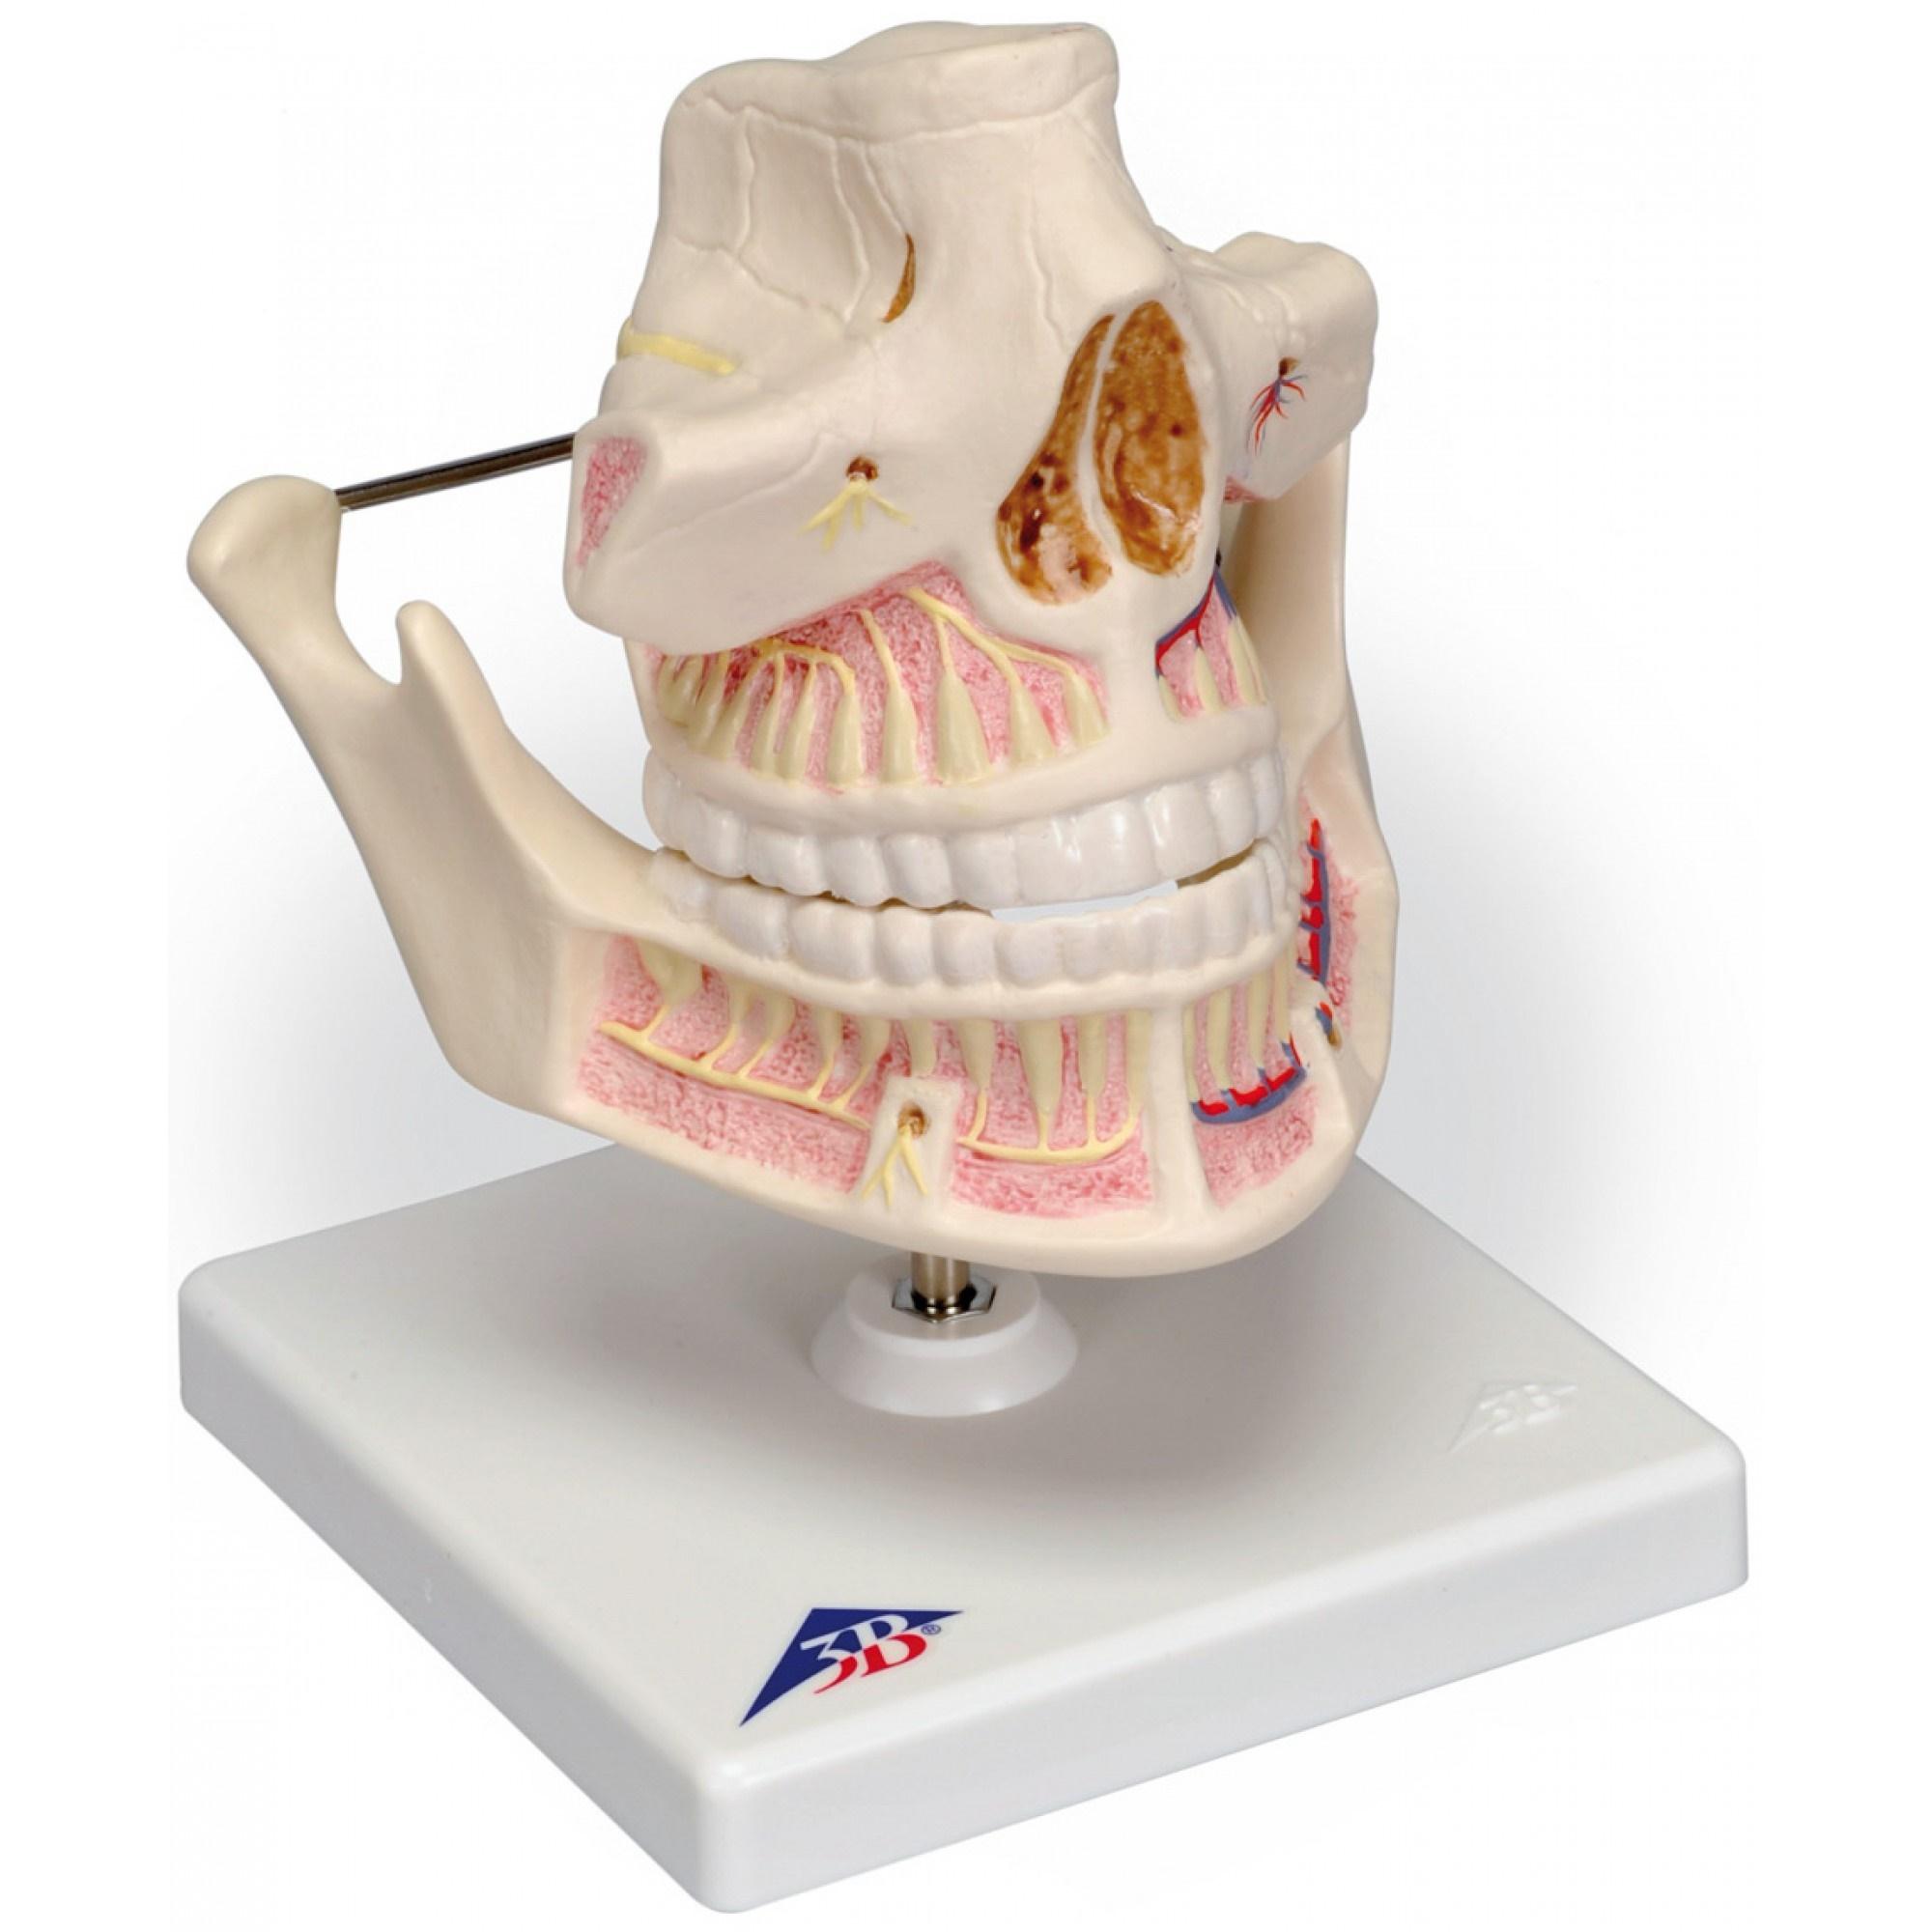 VE281.6 Zuby a čelist: Model chrupu dospělého